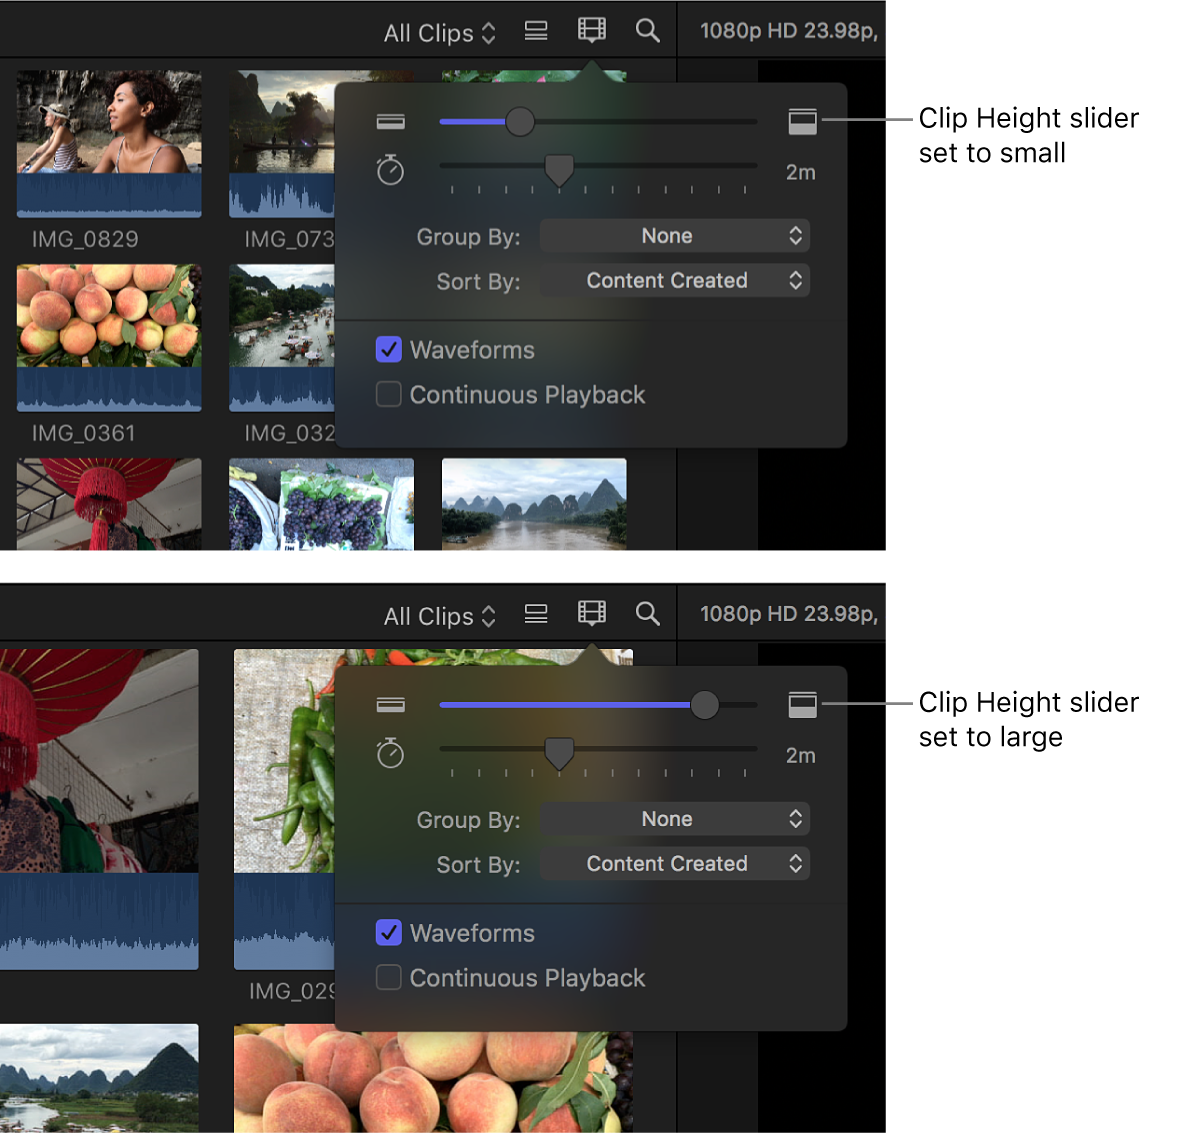 클립 높이 슬라이더를 사용하여 필름 스트립 높이를 변경하기 전과 후의 브라우저 필름 스트립